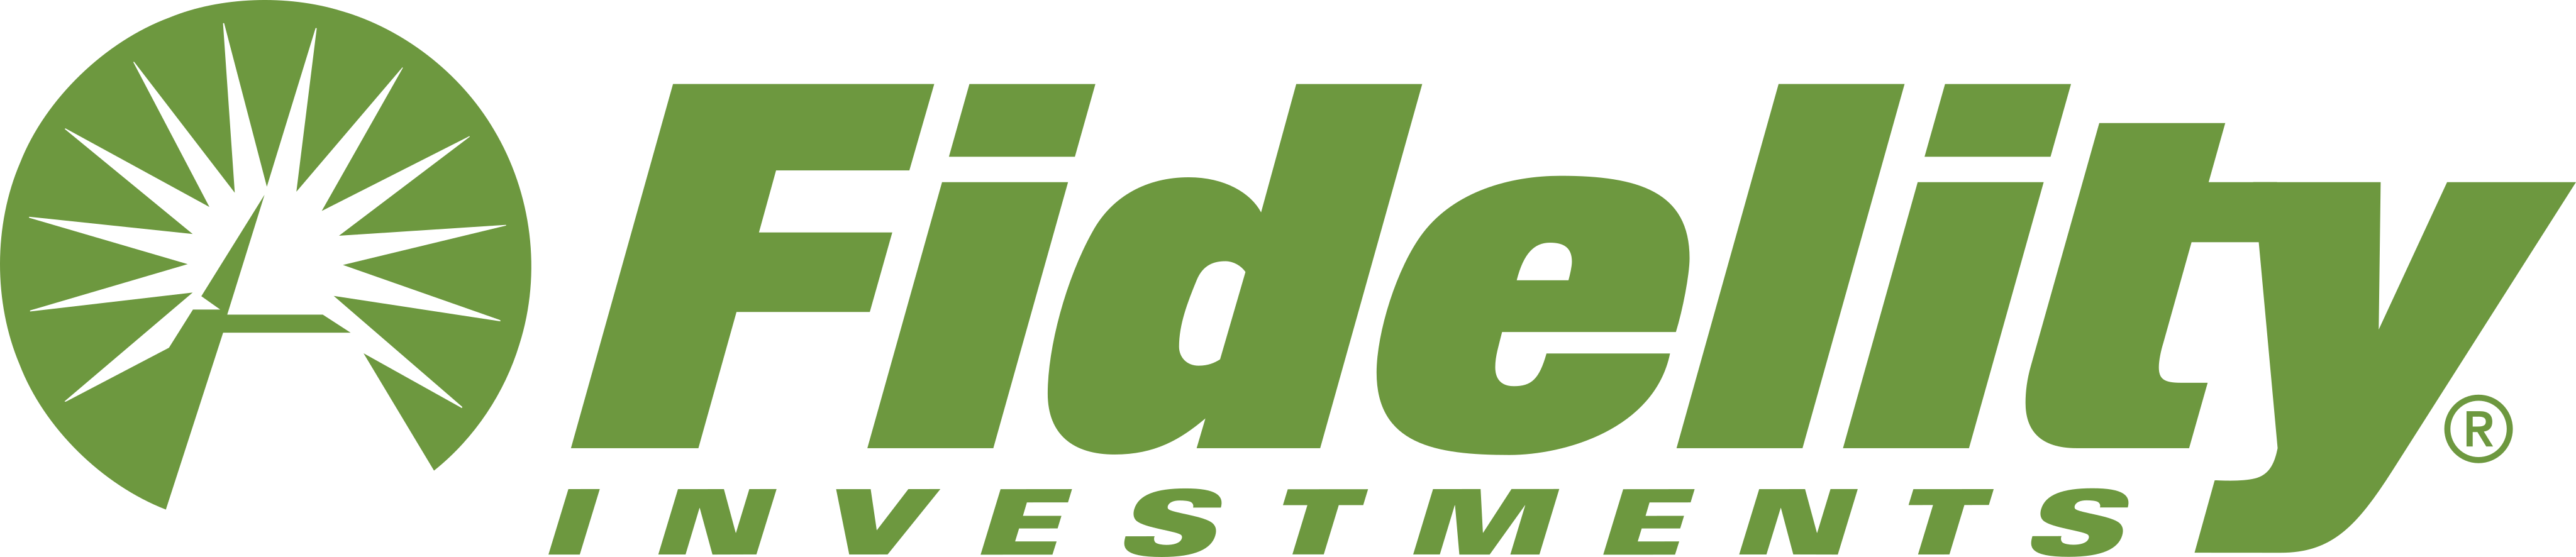 fidelity investments logo 2 - Fidelity Investments Logo